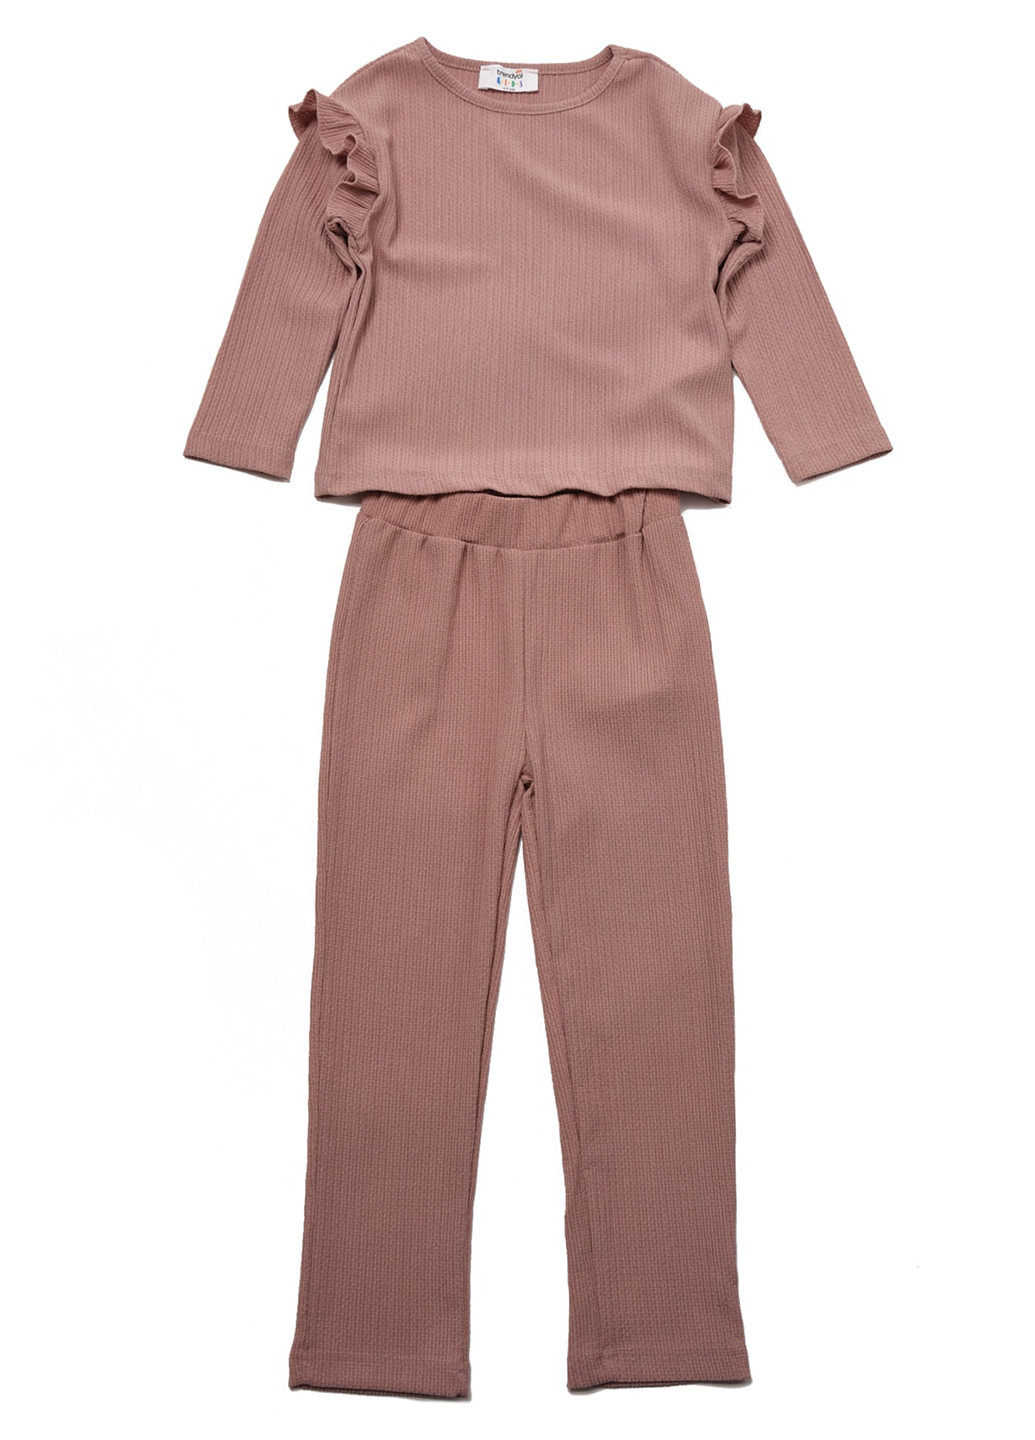 Светло-розовый демисезонный костюм (джемпер, брюки) брючный Trendyol